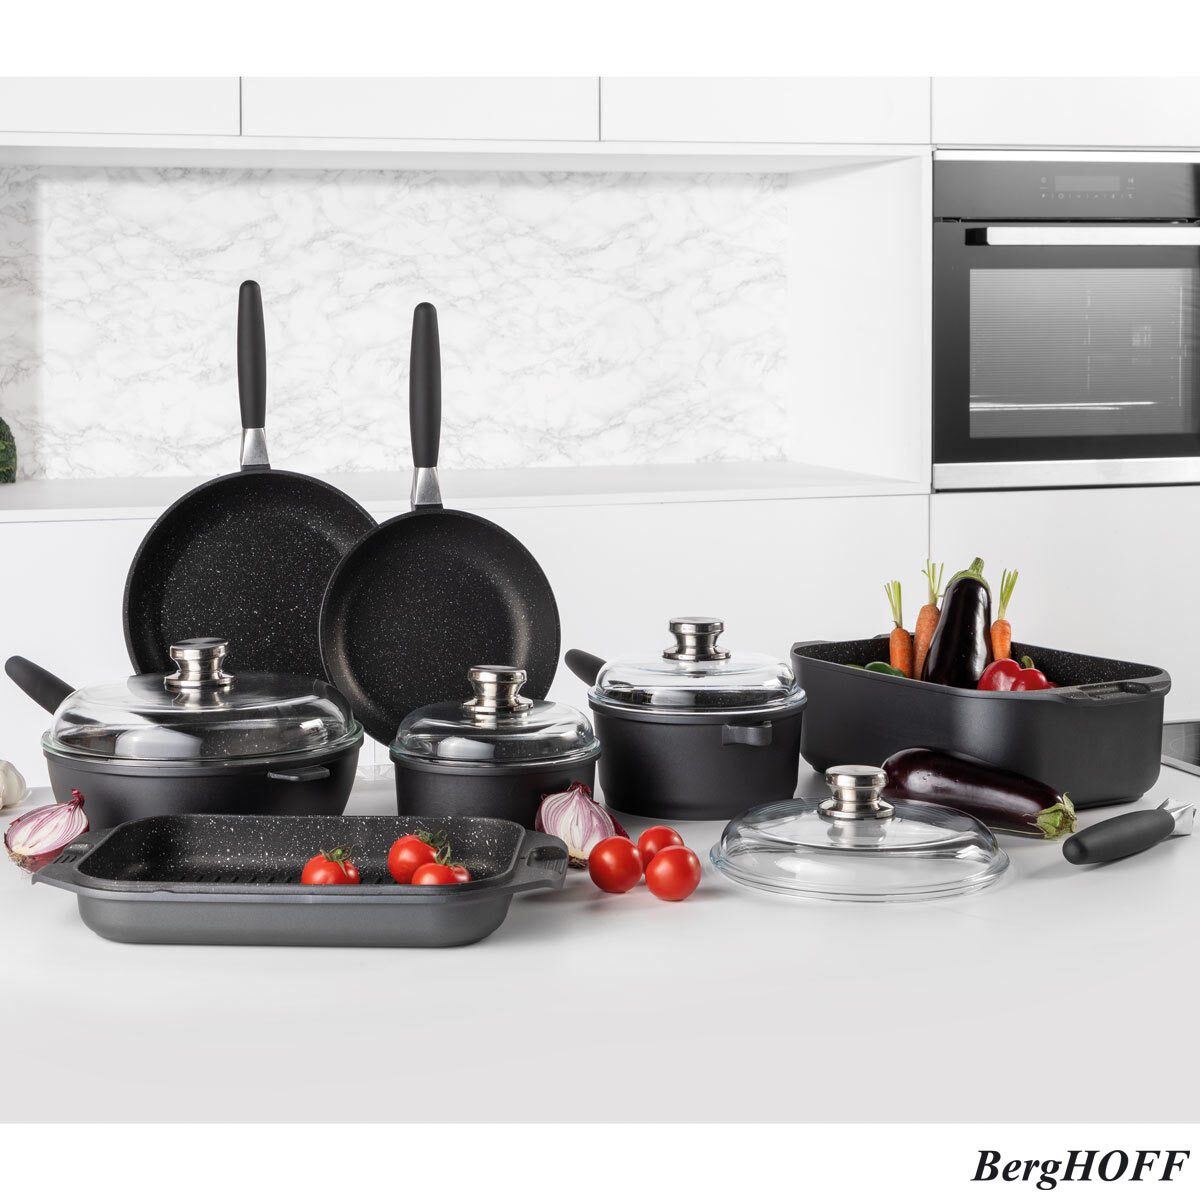 http://signatureretailstores.co.uk/cdn/shop/products/berghoff-eurocast-non-stick-11-piece-cookware-set-591475.jpg?v=1609818125